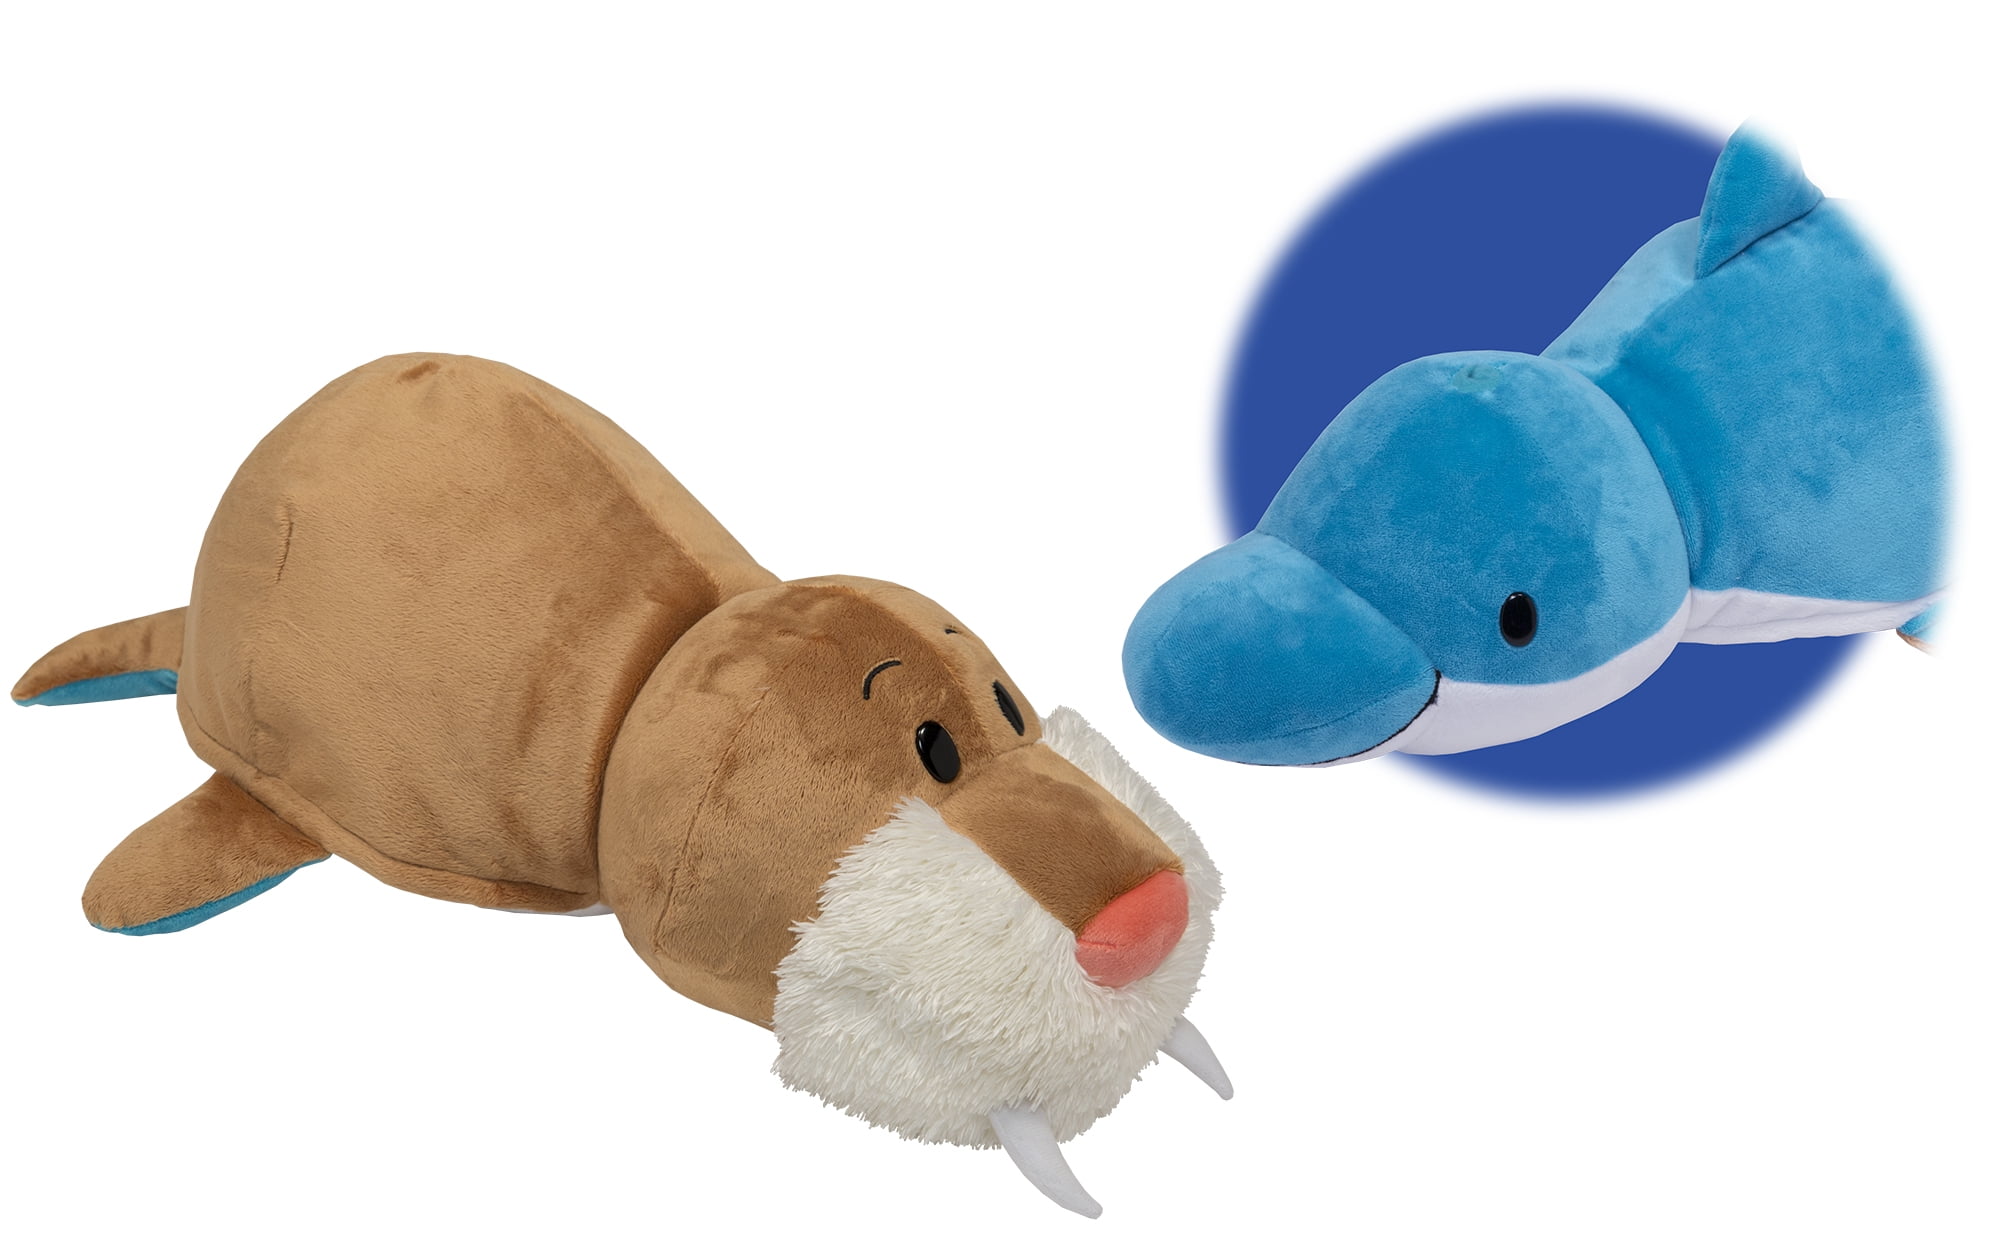 Мягкая игрушка перевертыш Вывернушка морж Дельфин. Мягкая игрушка слон 40 см. Мягкая игрушка 1 Toy Вывернушка морж-Дельфин 10 см.